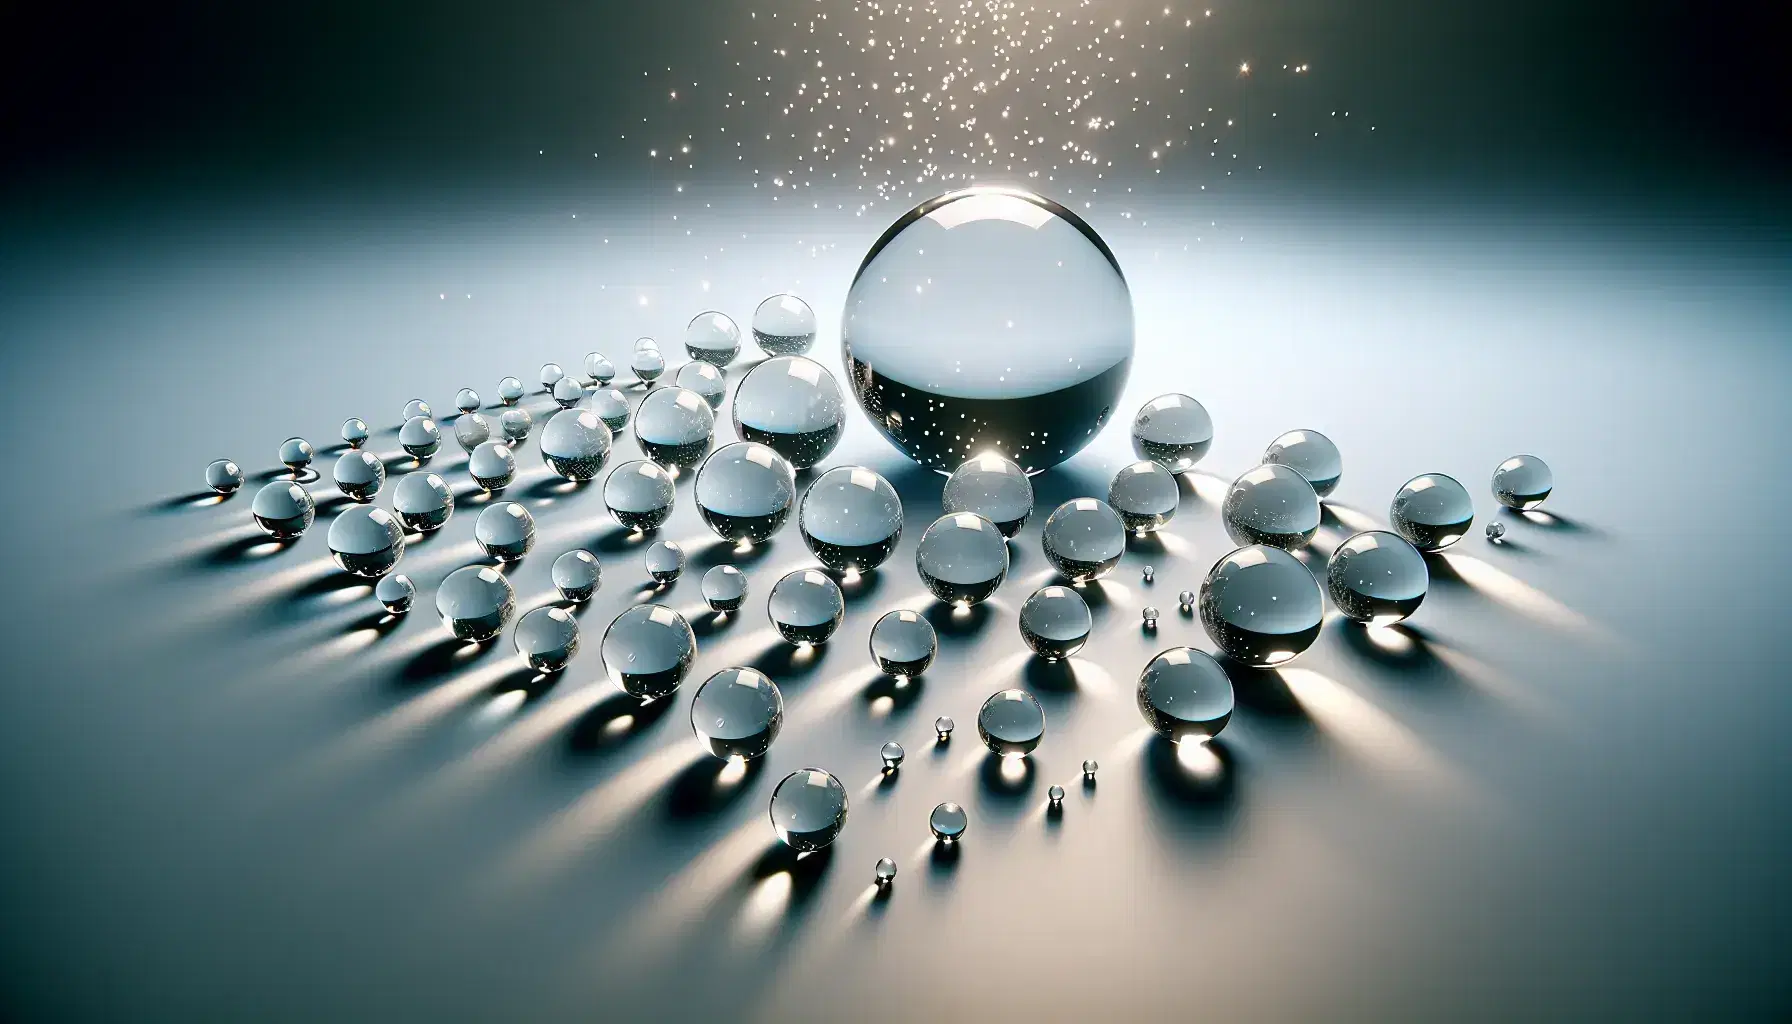 Colección de esferas de vidrio transparentes en superficie gris, con una gran esfera central y otras decreciendo en tamaño hacia los extremos, reflejando luz y sombras suaves.